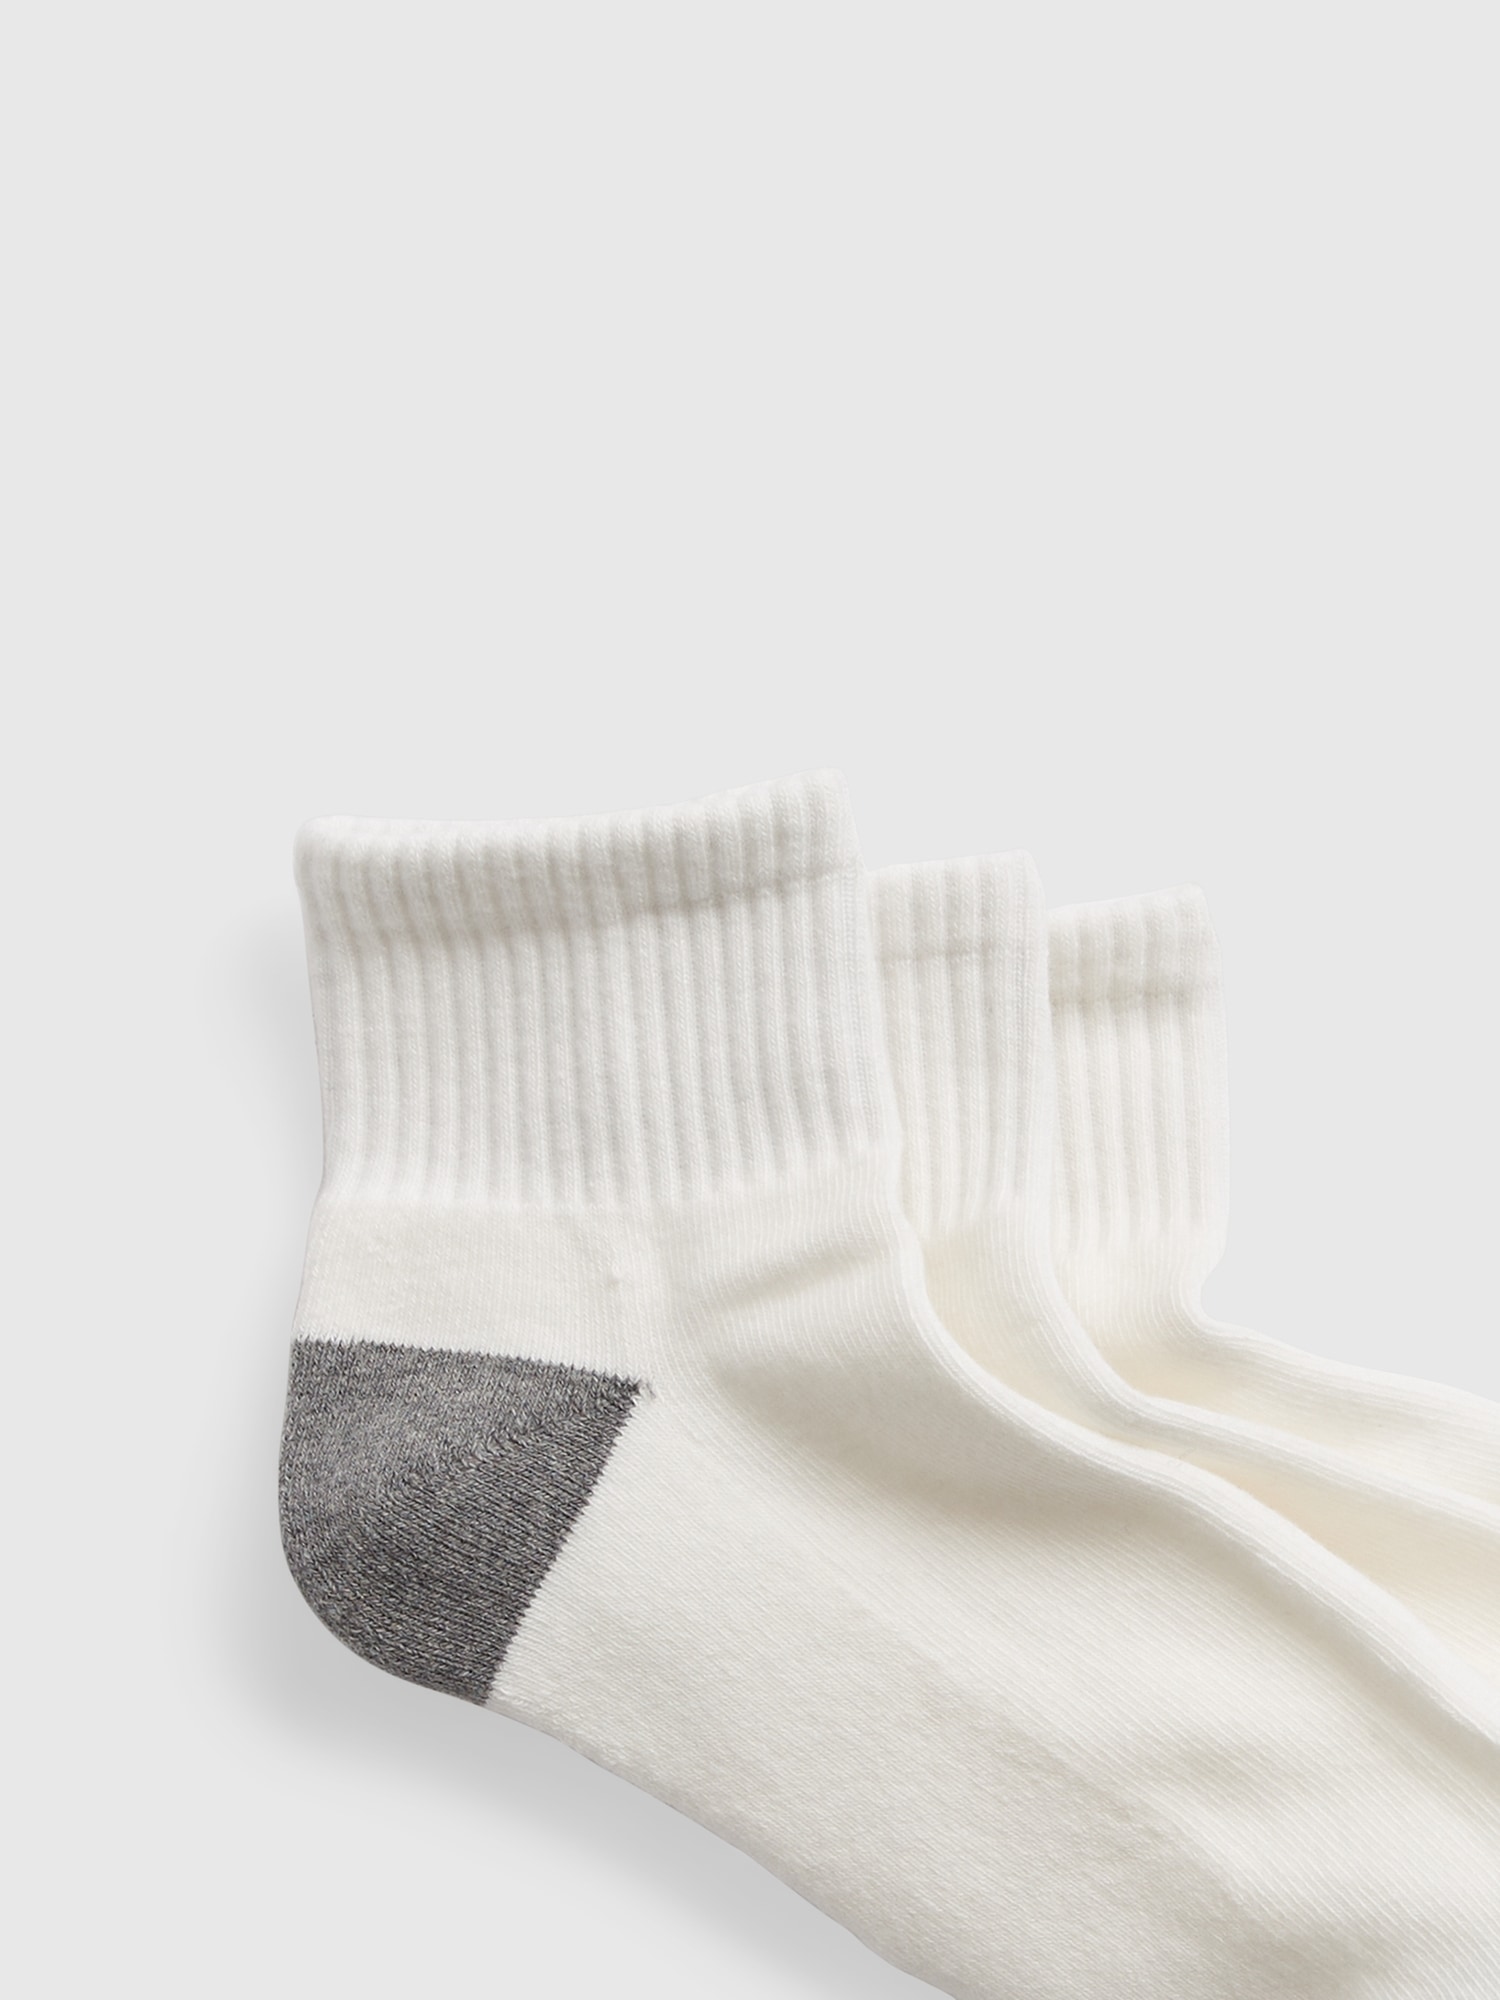 Quarter/ Ankle Socks Size 13-15 Choose Color 12 pair – Nans Home ideas